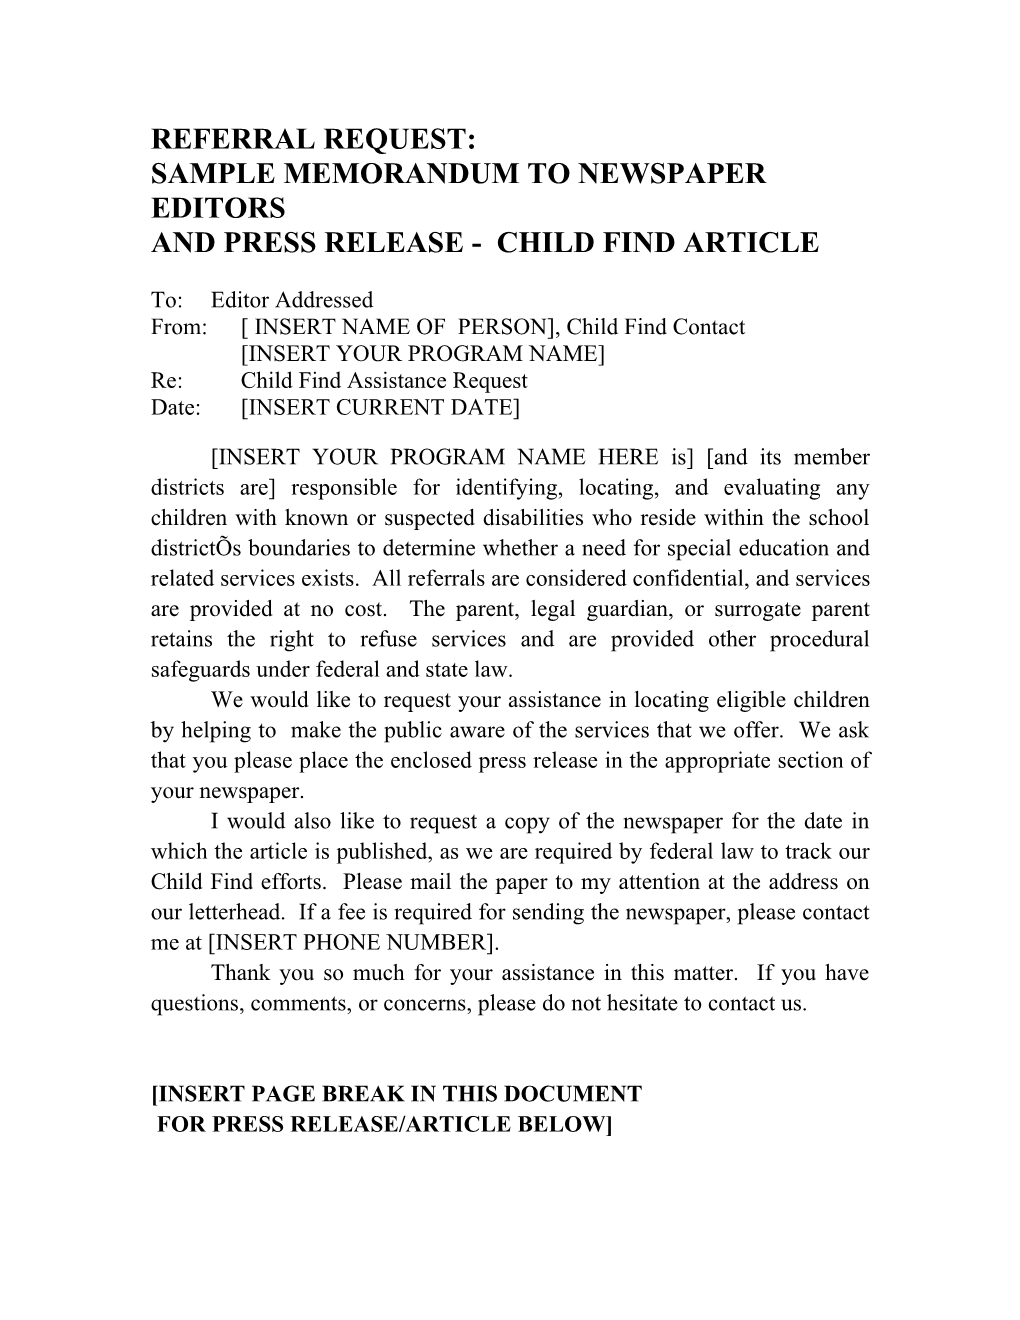 Sample Memorandum to Newspaper Editors